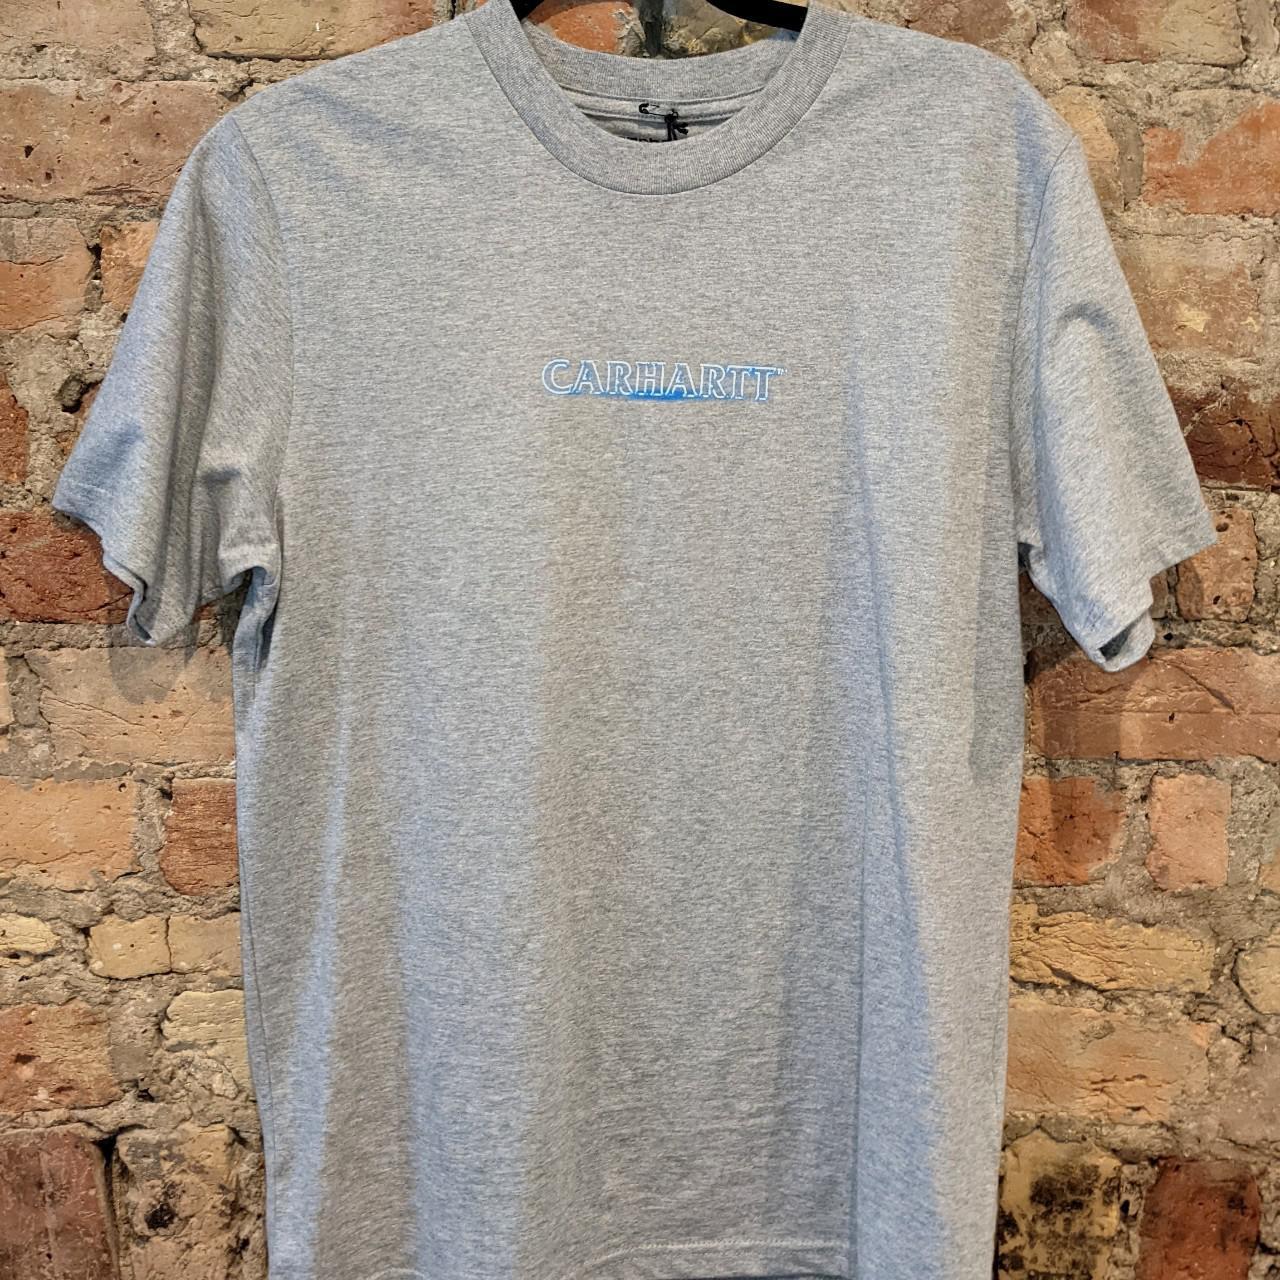 Carhartt Men's Grey and Blue T-shirt | Depop